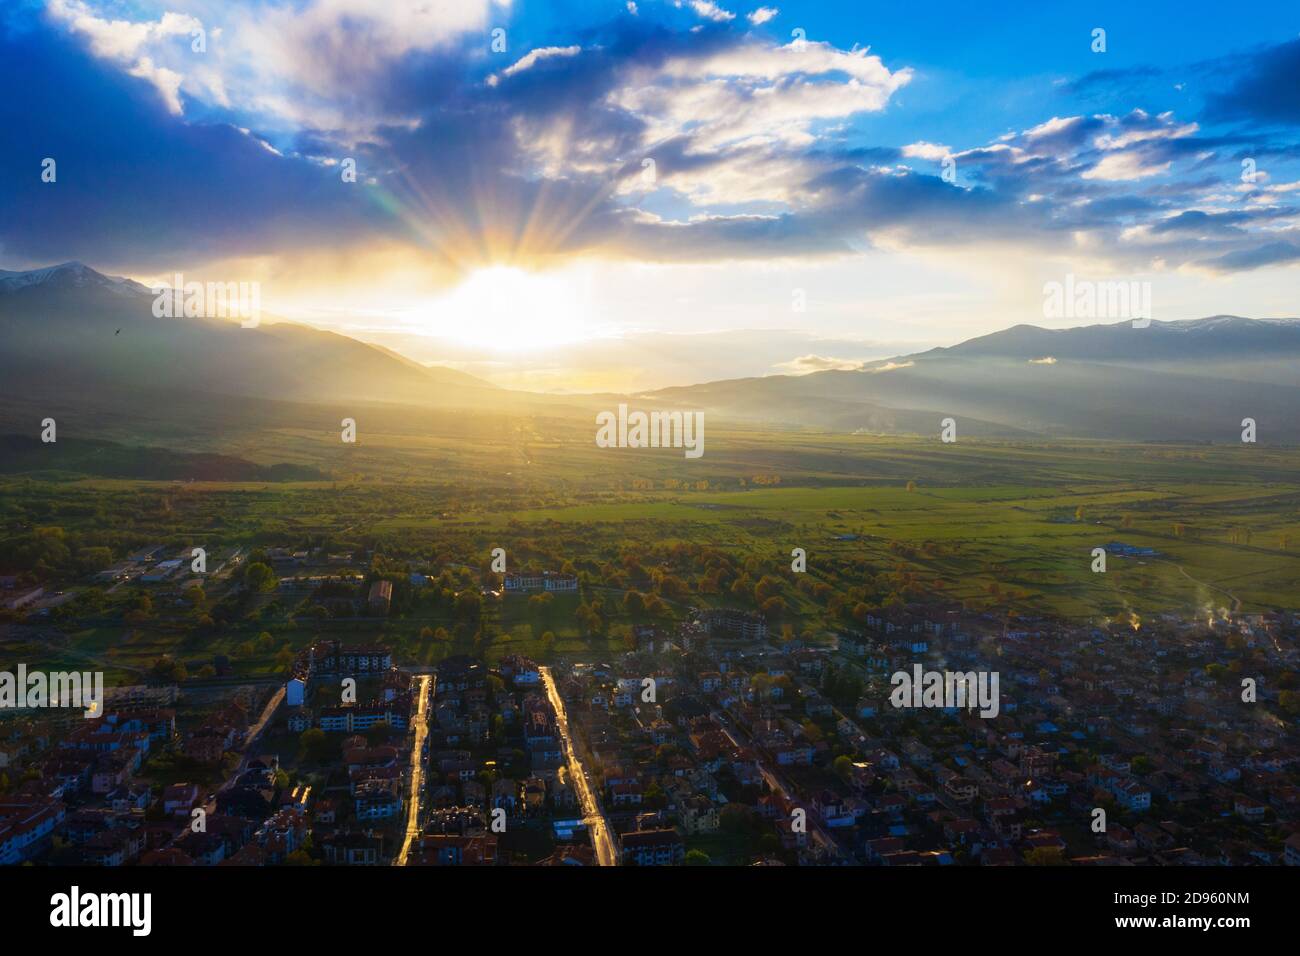 Europe, Bulgarie, Bansko, Parc national de Pirin, vue aérienne du site de l'UNESCO Banque D'Images